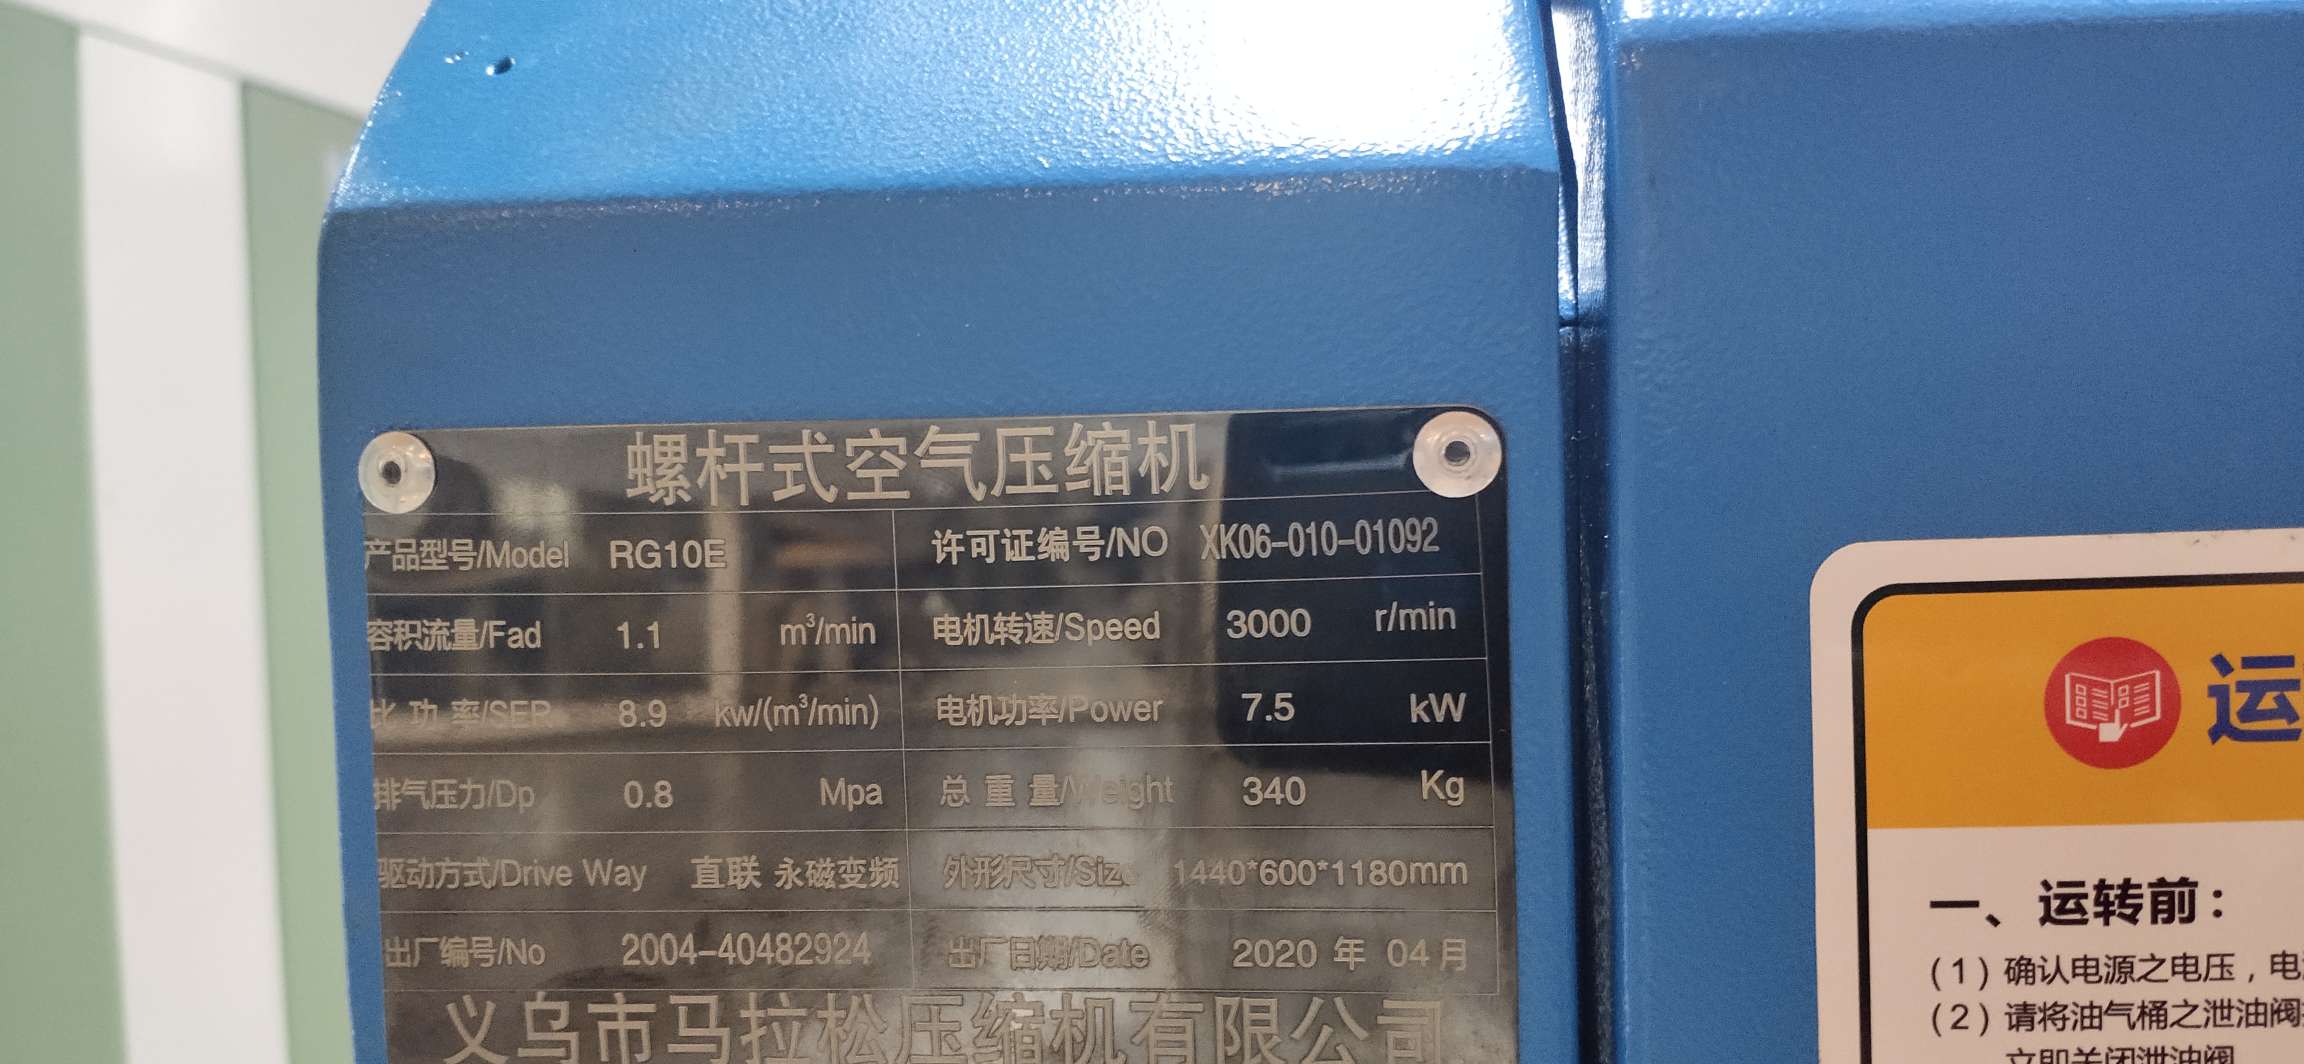 义乌马拉松压缩机RG10E 7.5千瓦直连永磁变频详情4